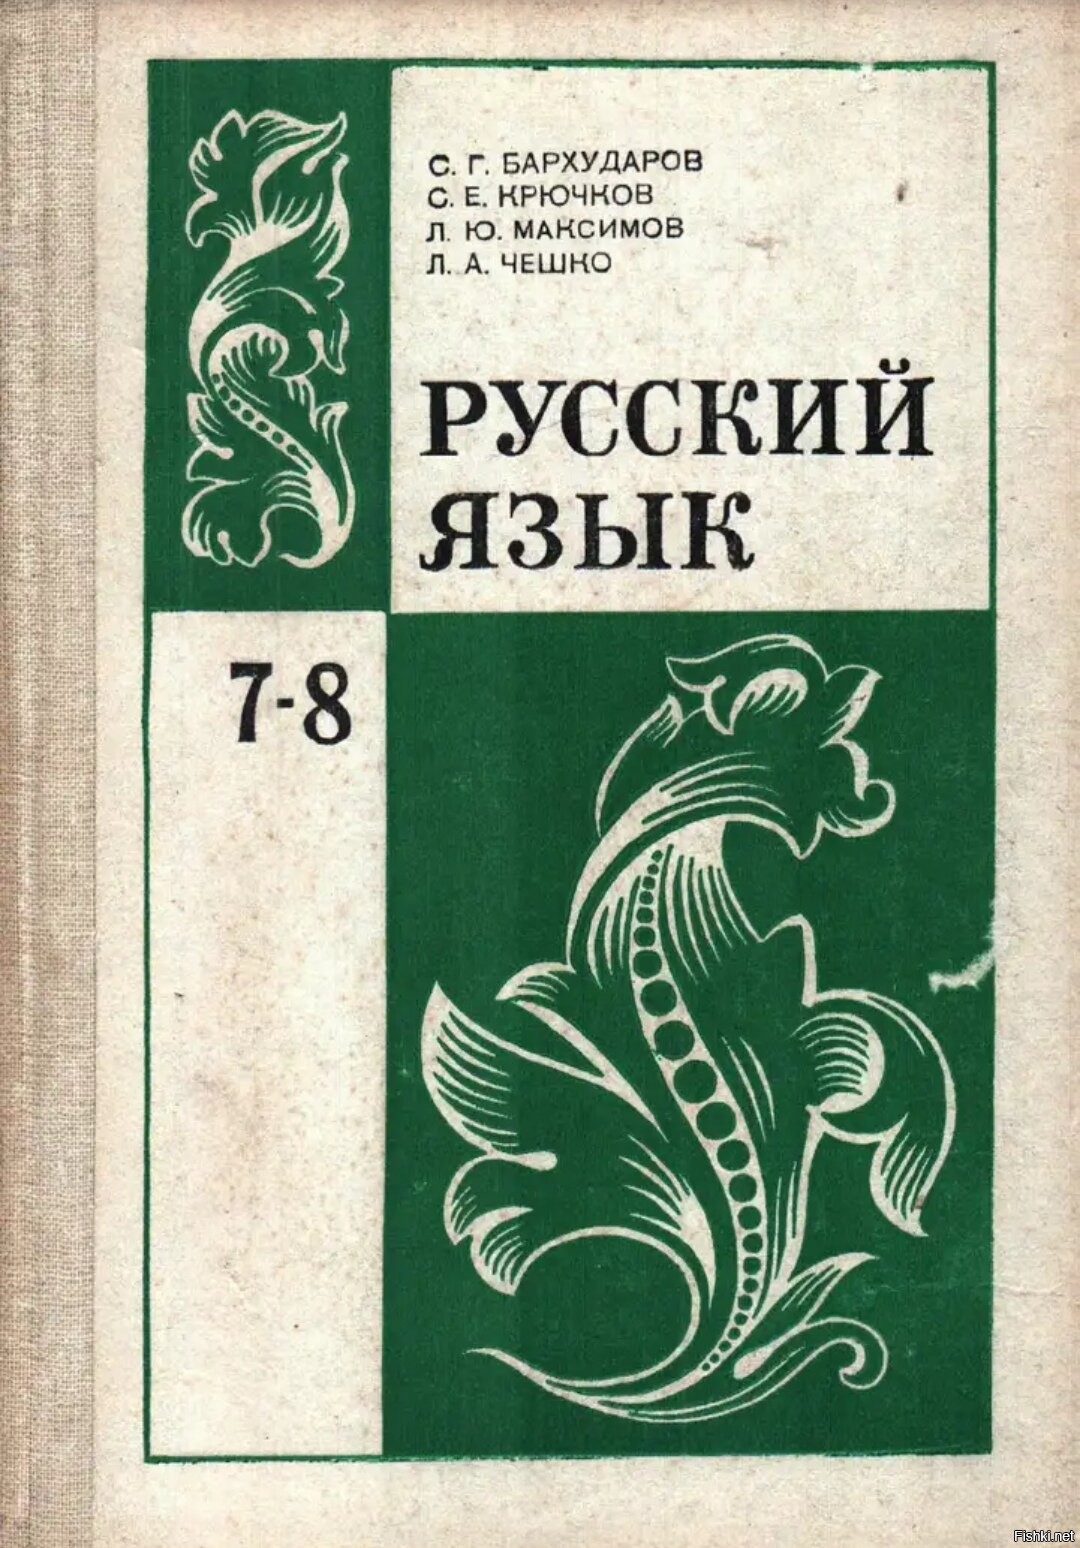 Учебник русского языка